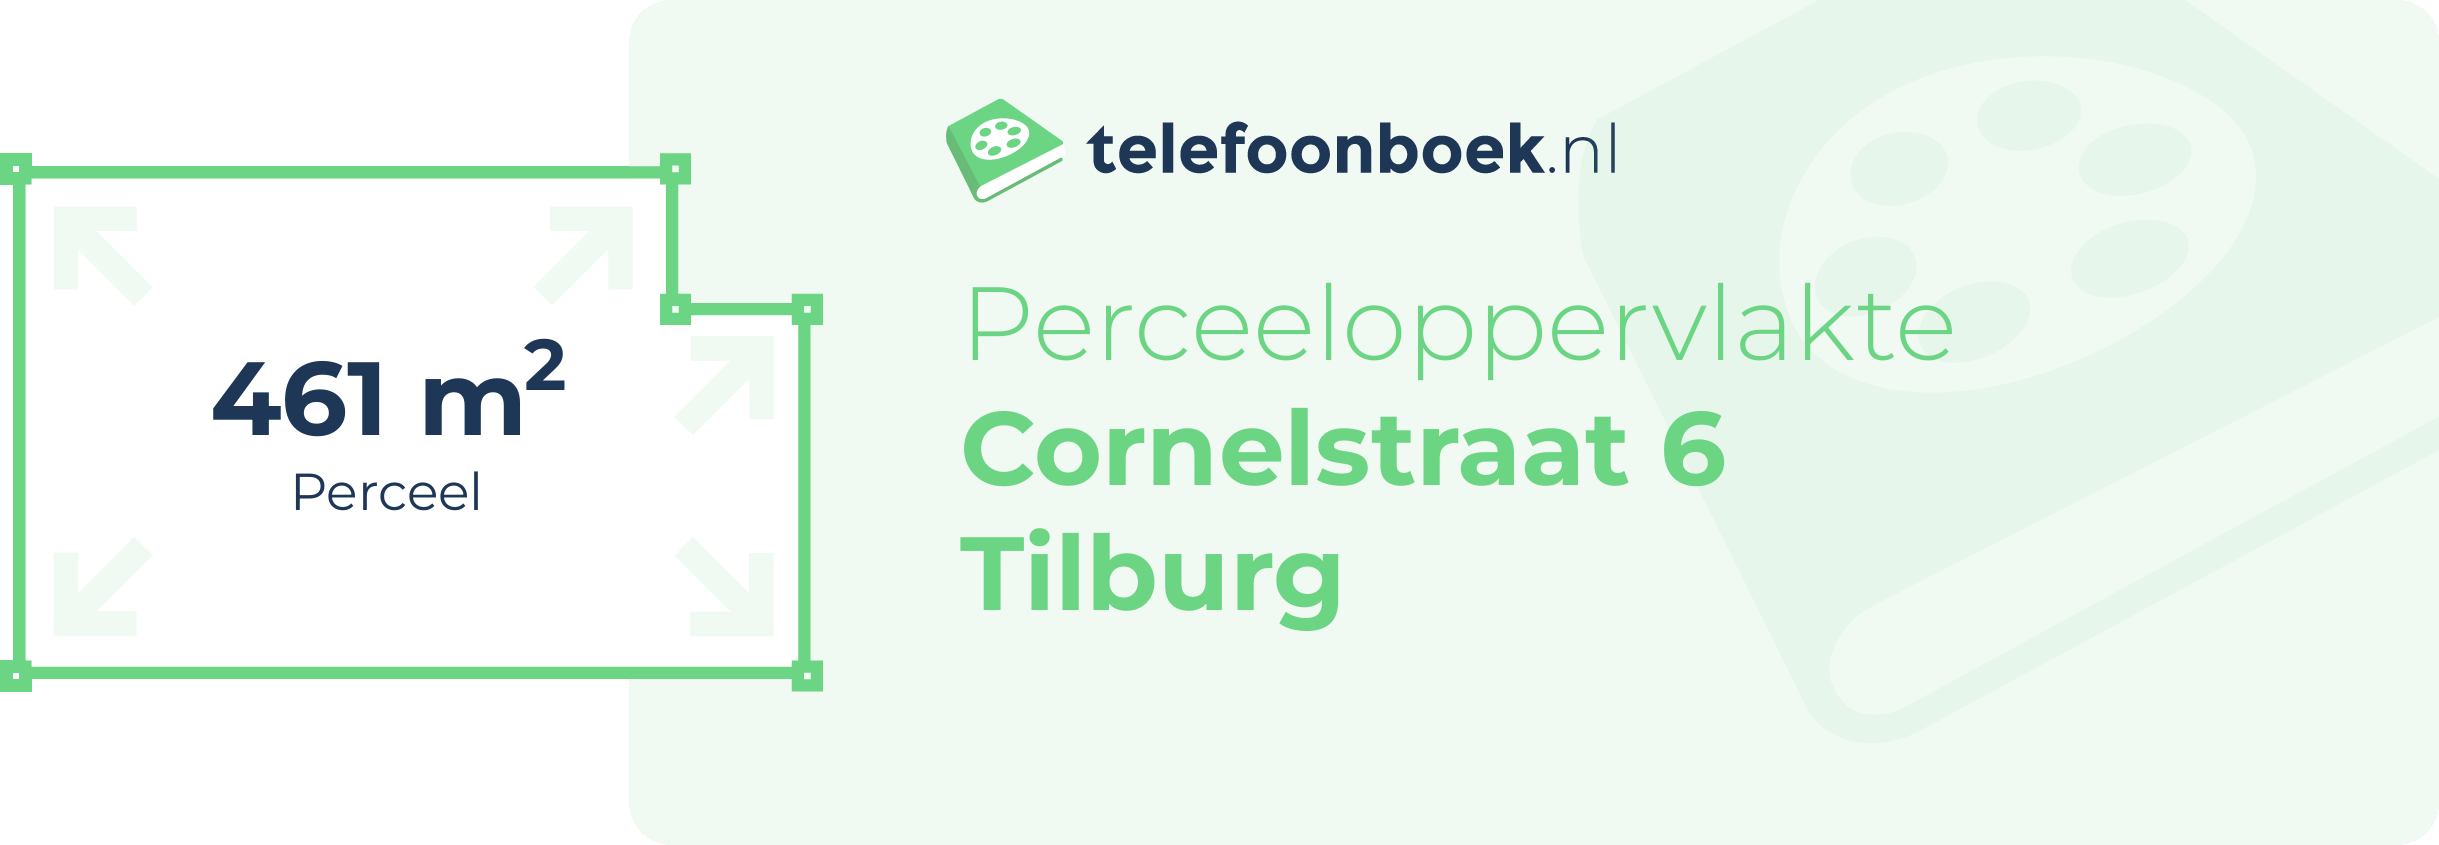 Perceeloppervlakte Cornelstraat 6 Tilburg